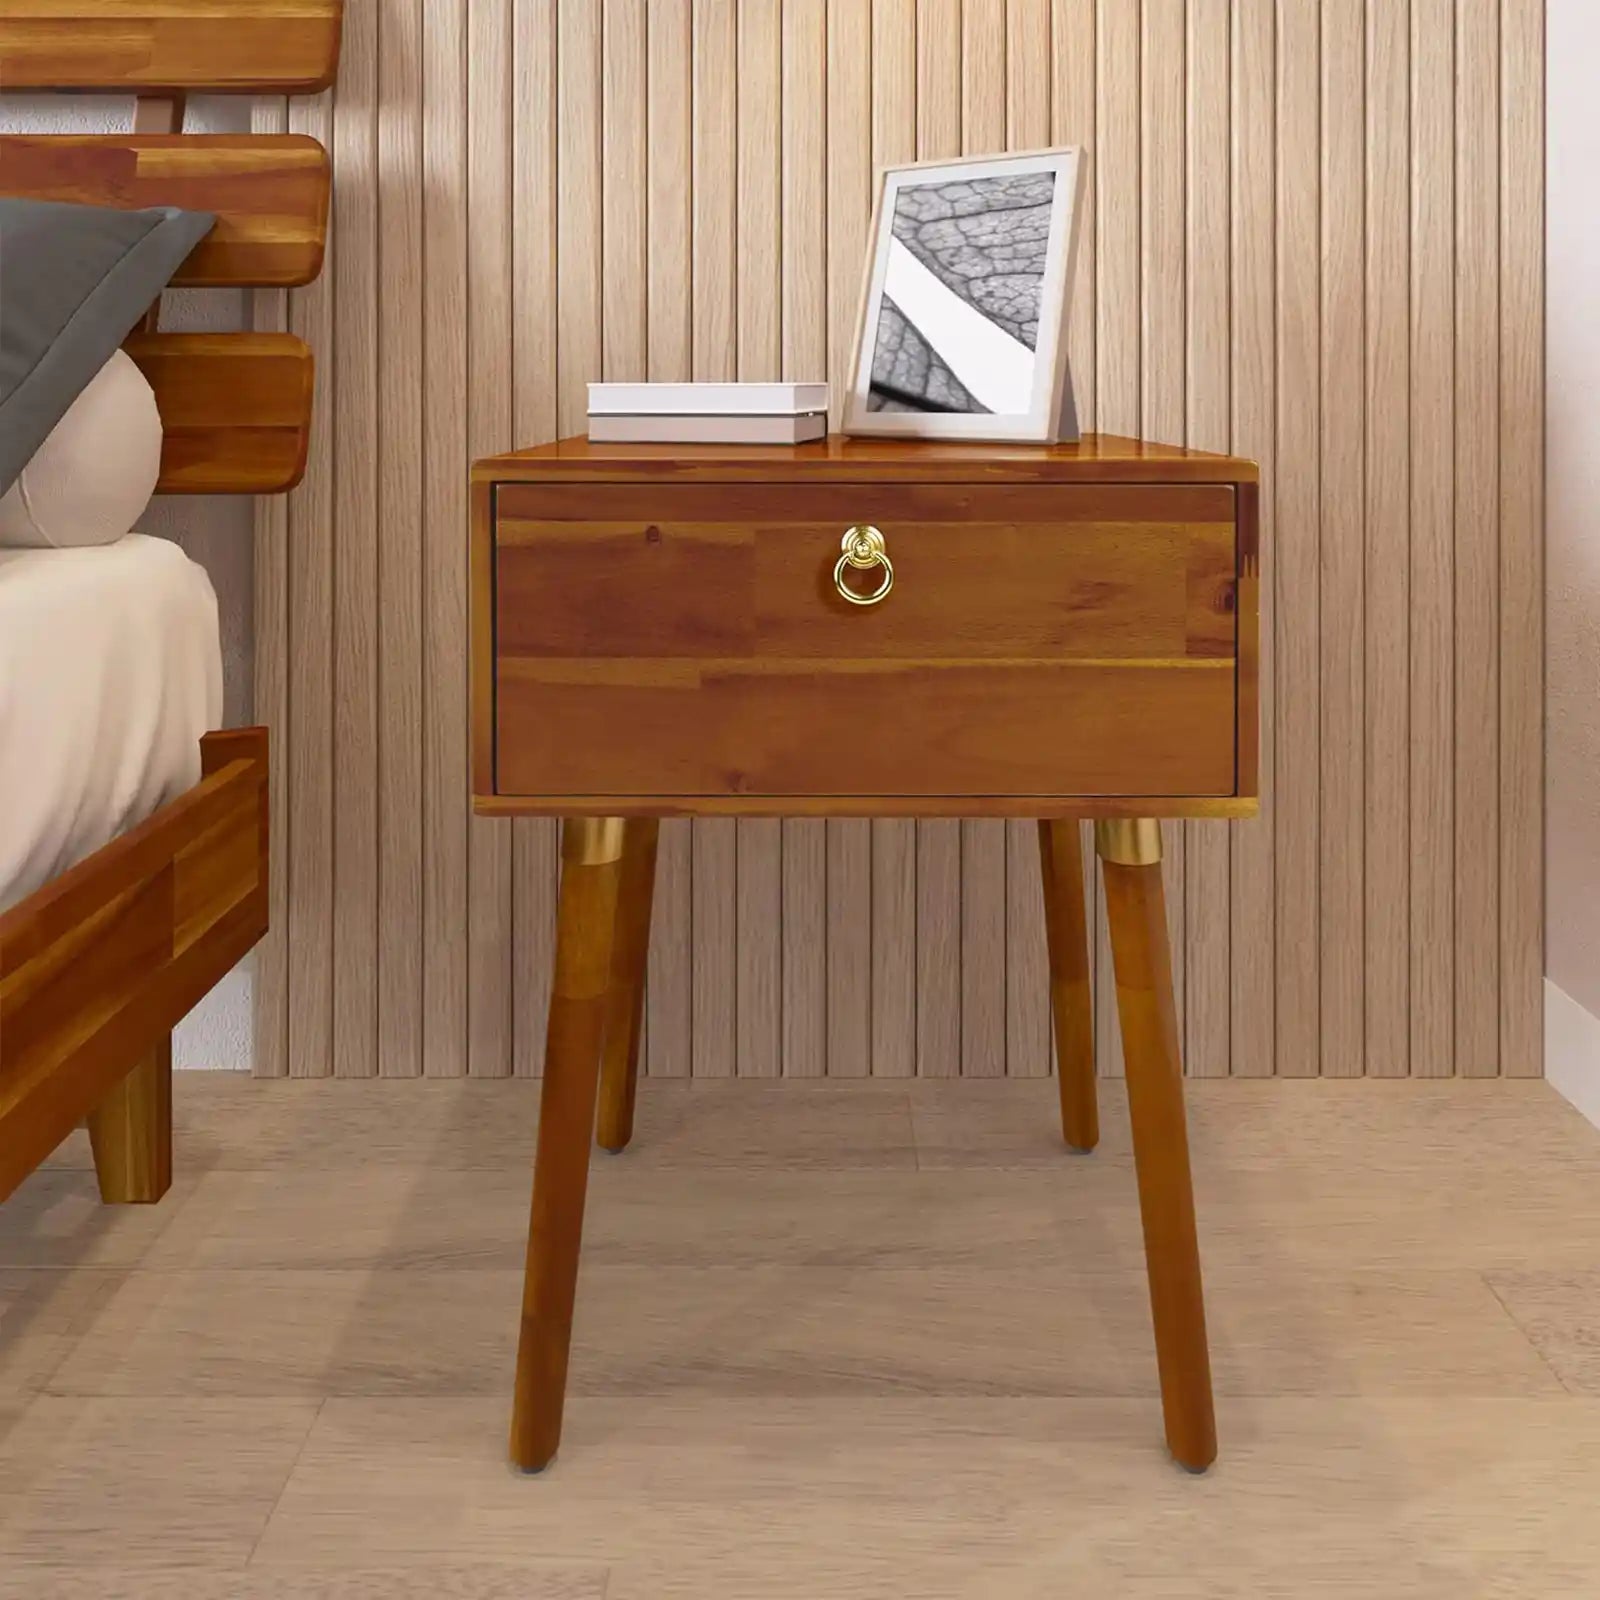 Queen Solid Wood Platform Bed Frame, King Platform Bed Frame Wood